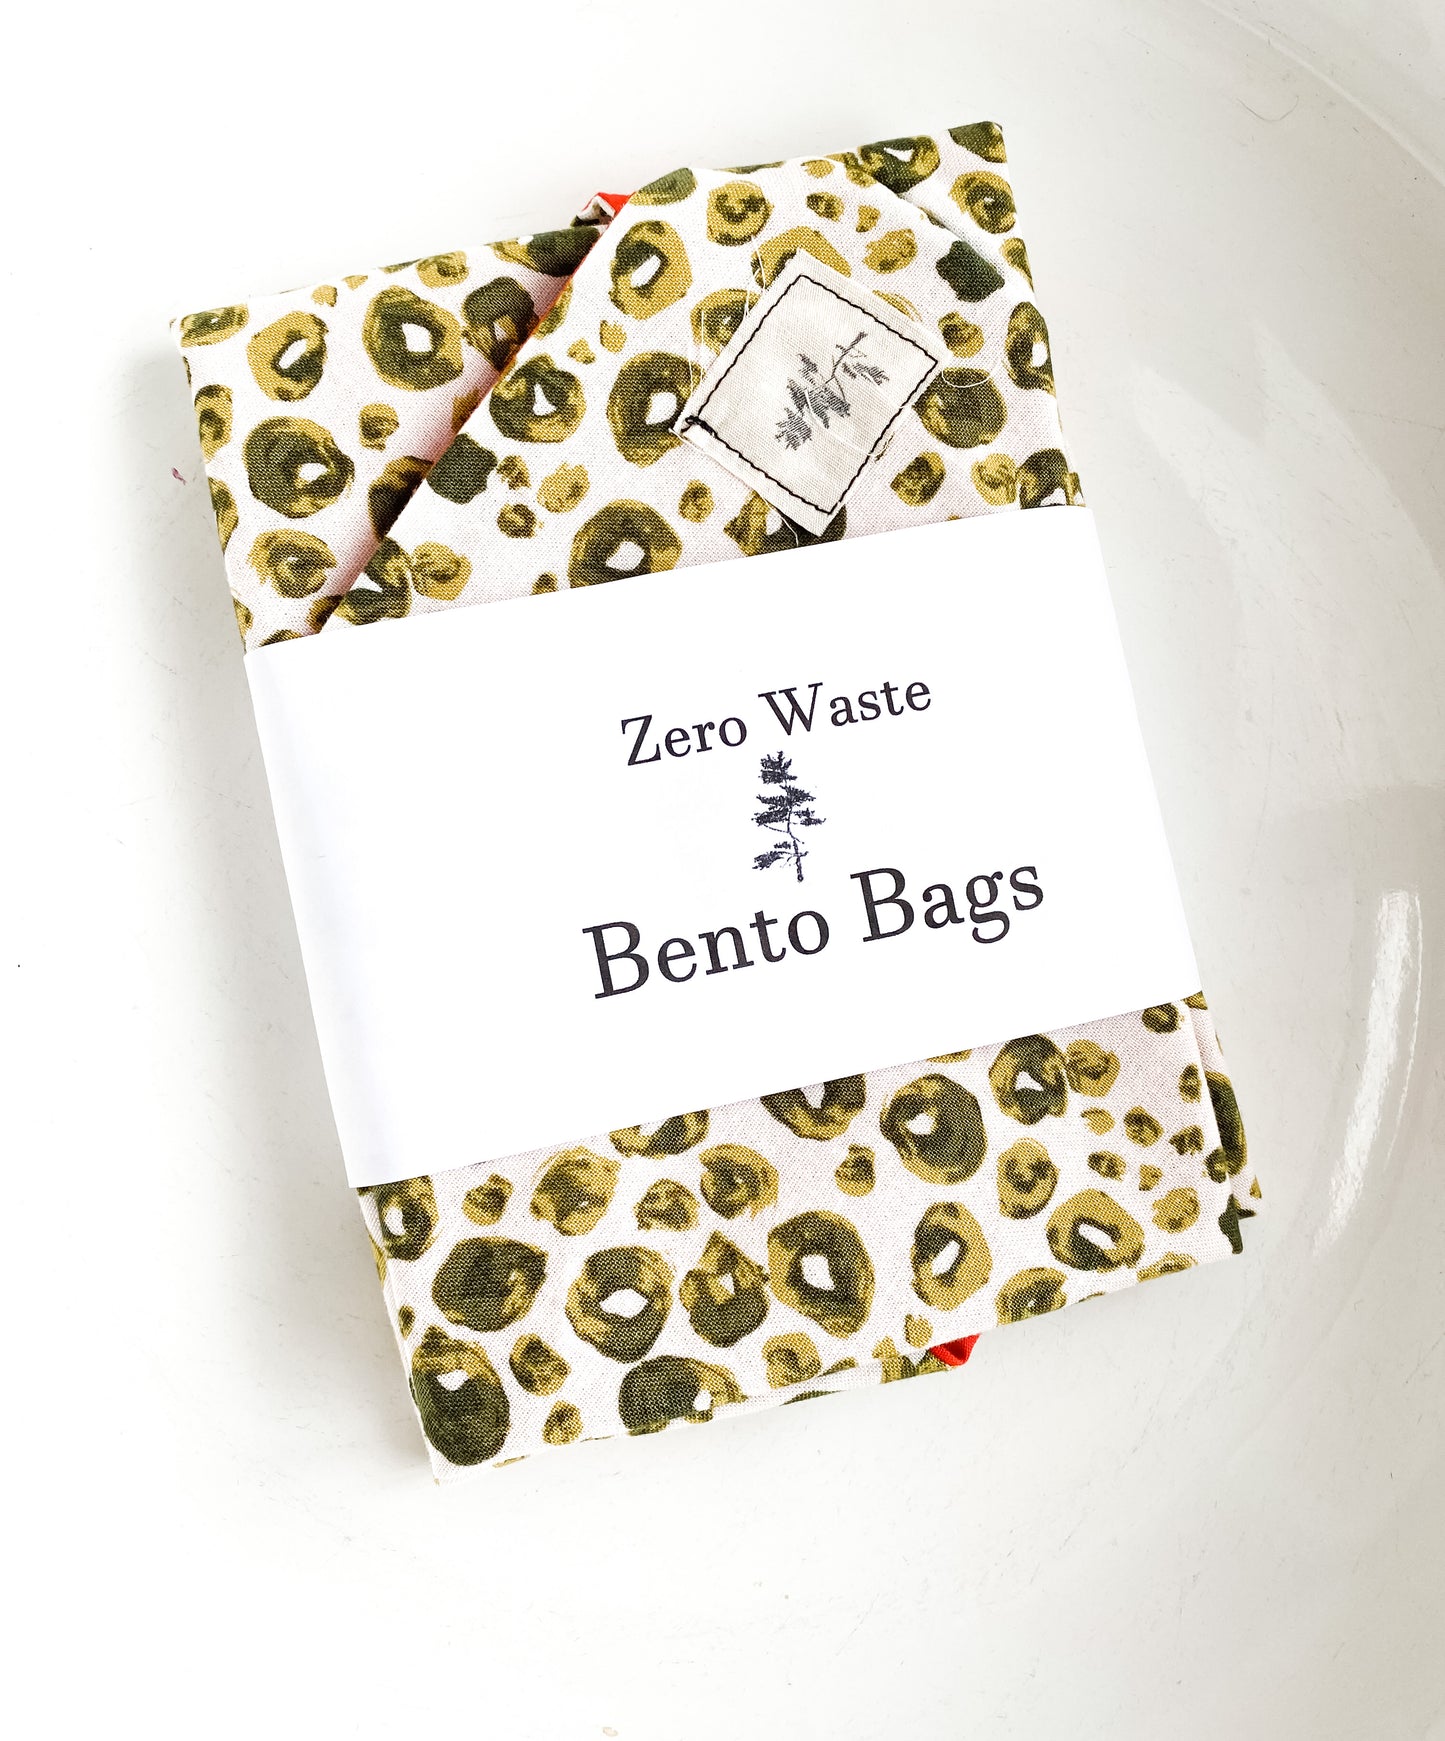 Zero Waste Bento Bags